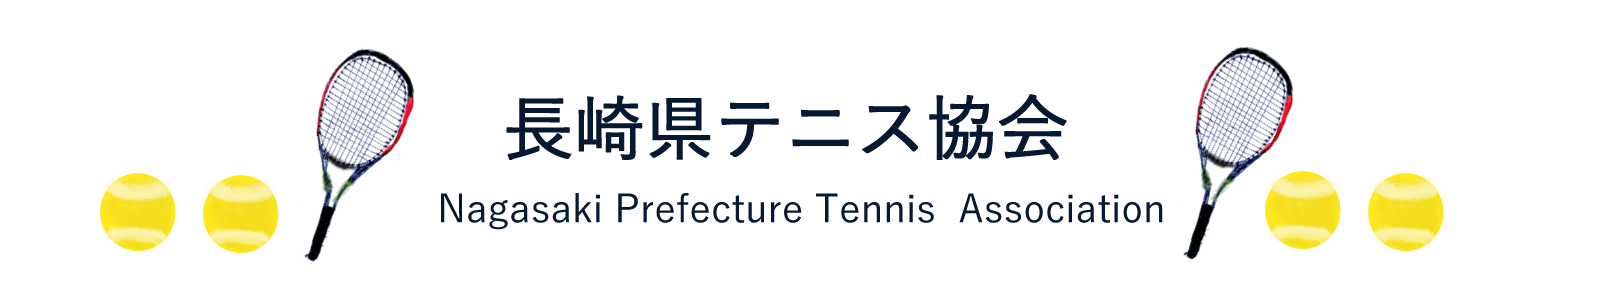 長崎県テニス協会